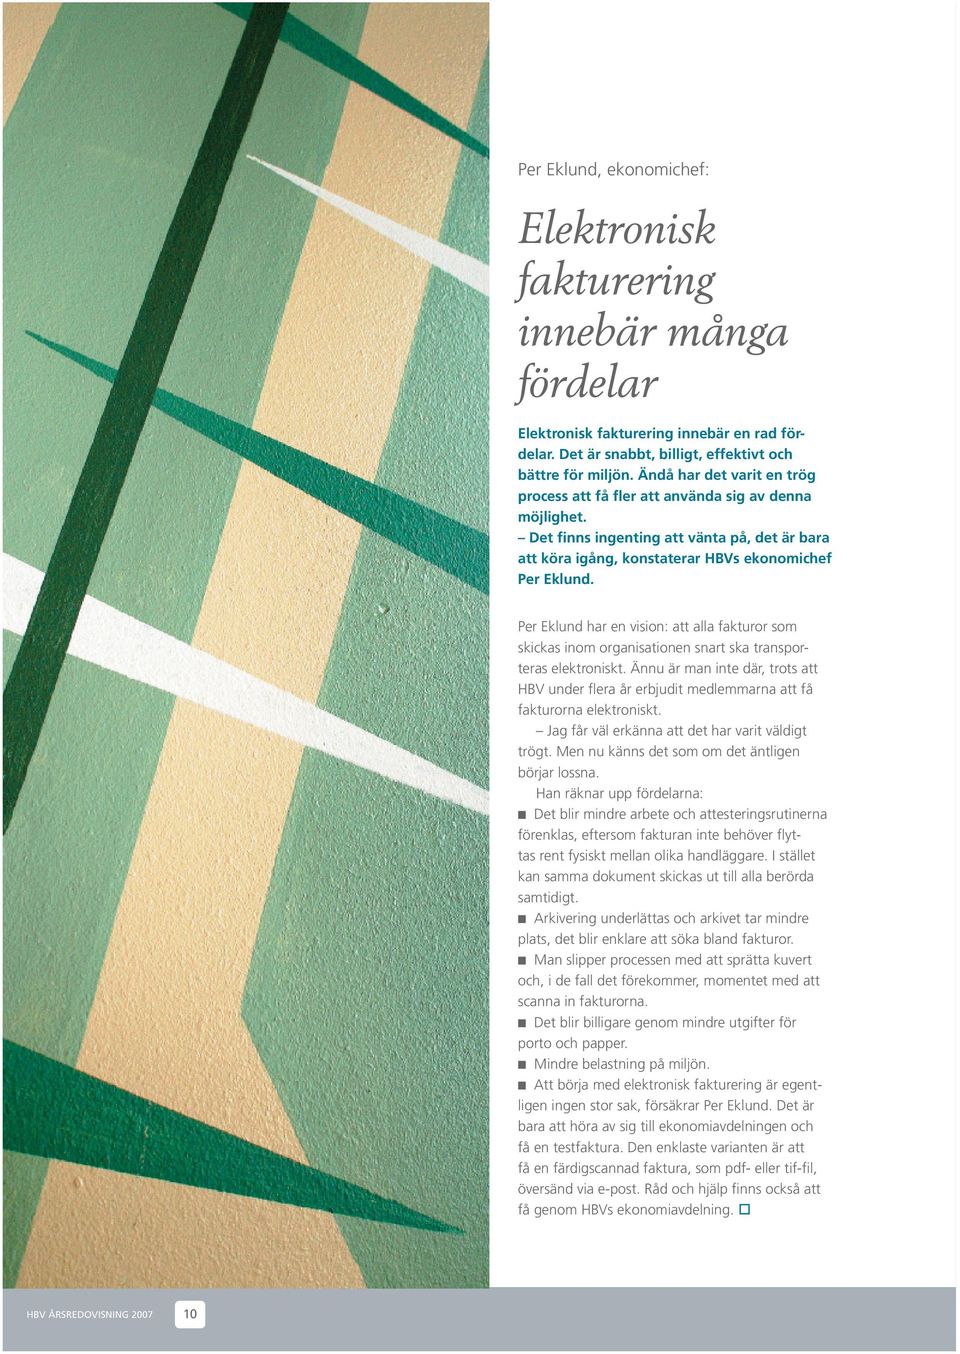 Per Eklund har en vision: att alla fakturor som skickas inom organisationen snart ska transporteras elektroniskt.